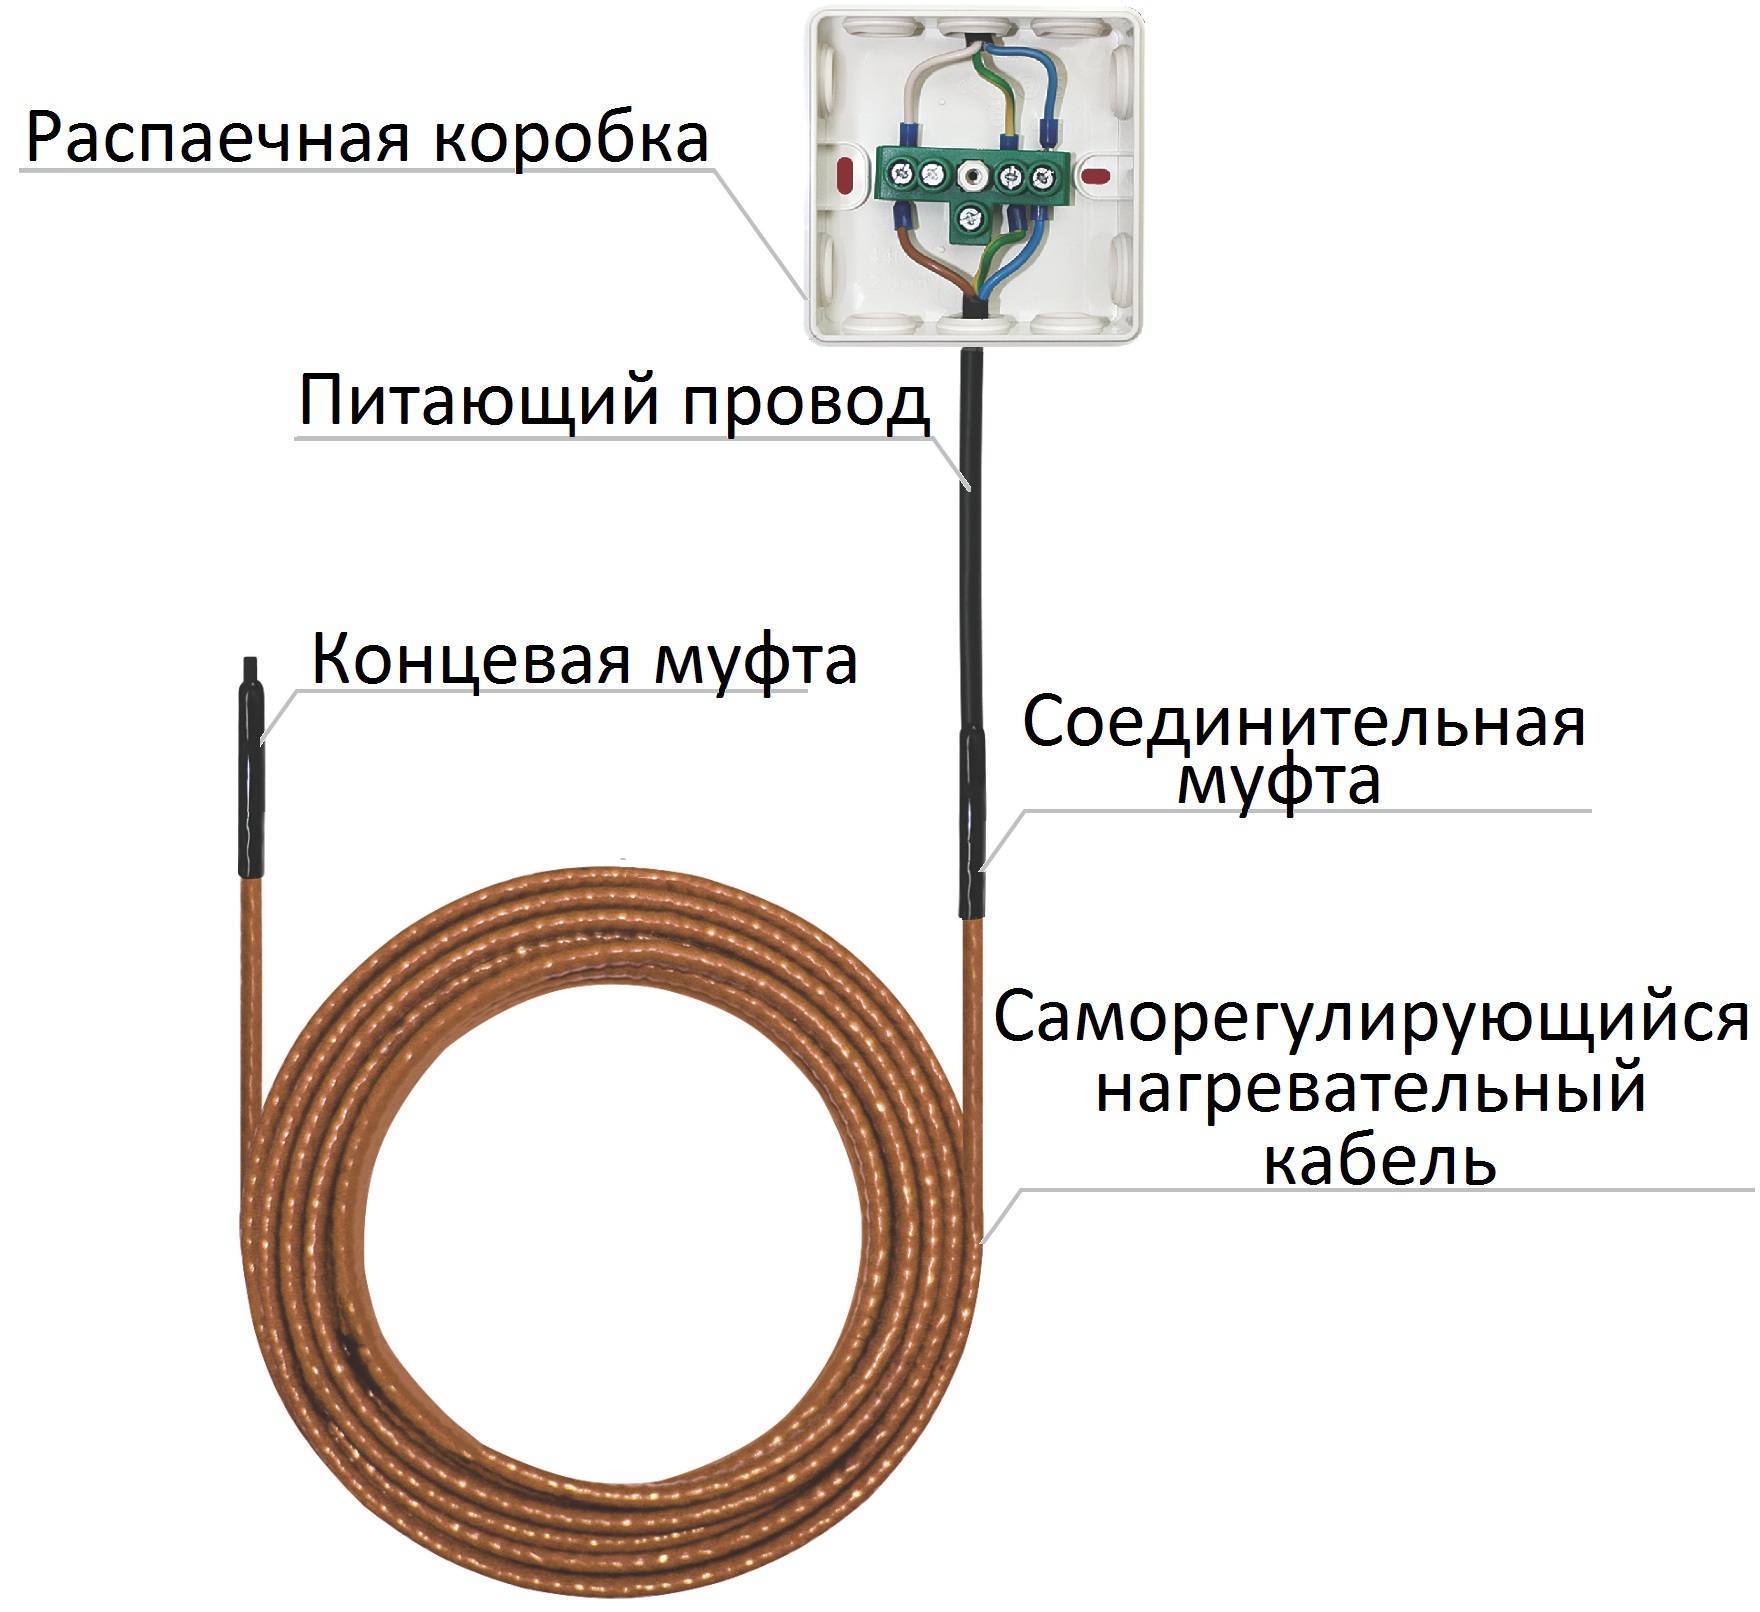 Как подключить греющий кабель к сети